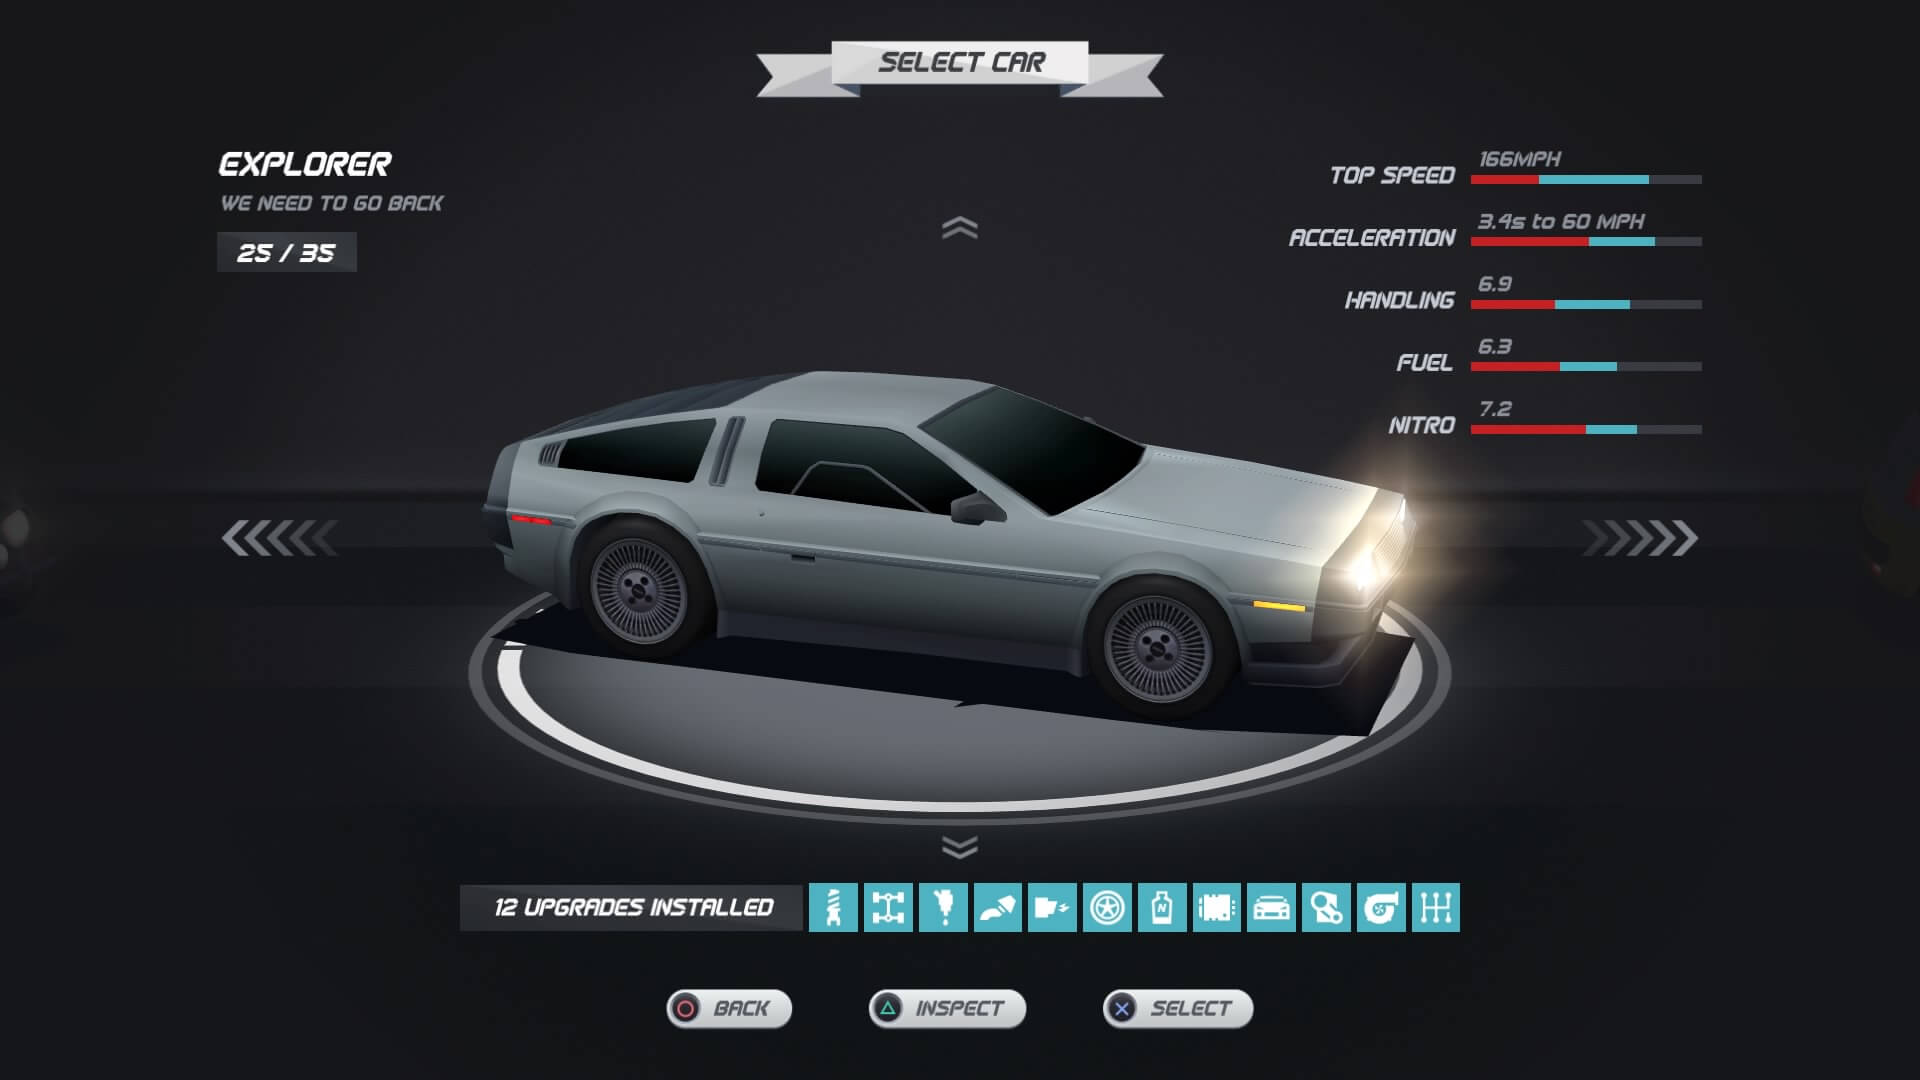 Screenshot of Horizon Chase Turbo game showing an “Explorer,